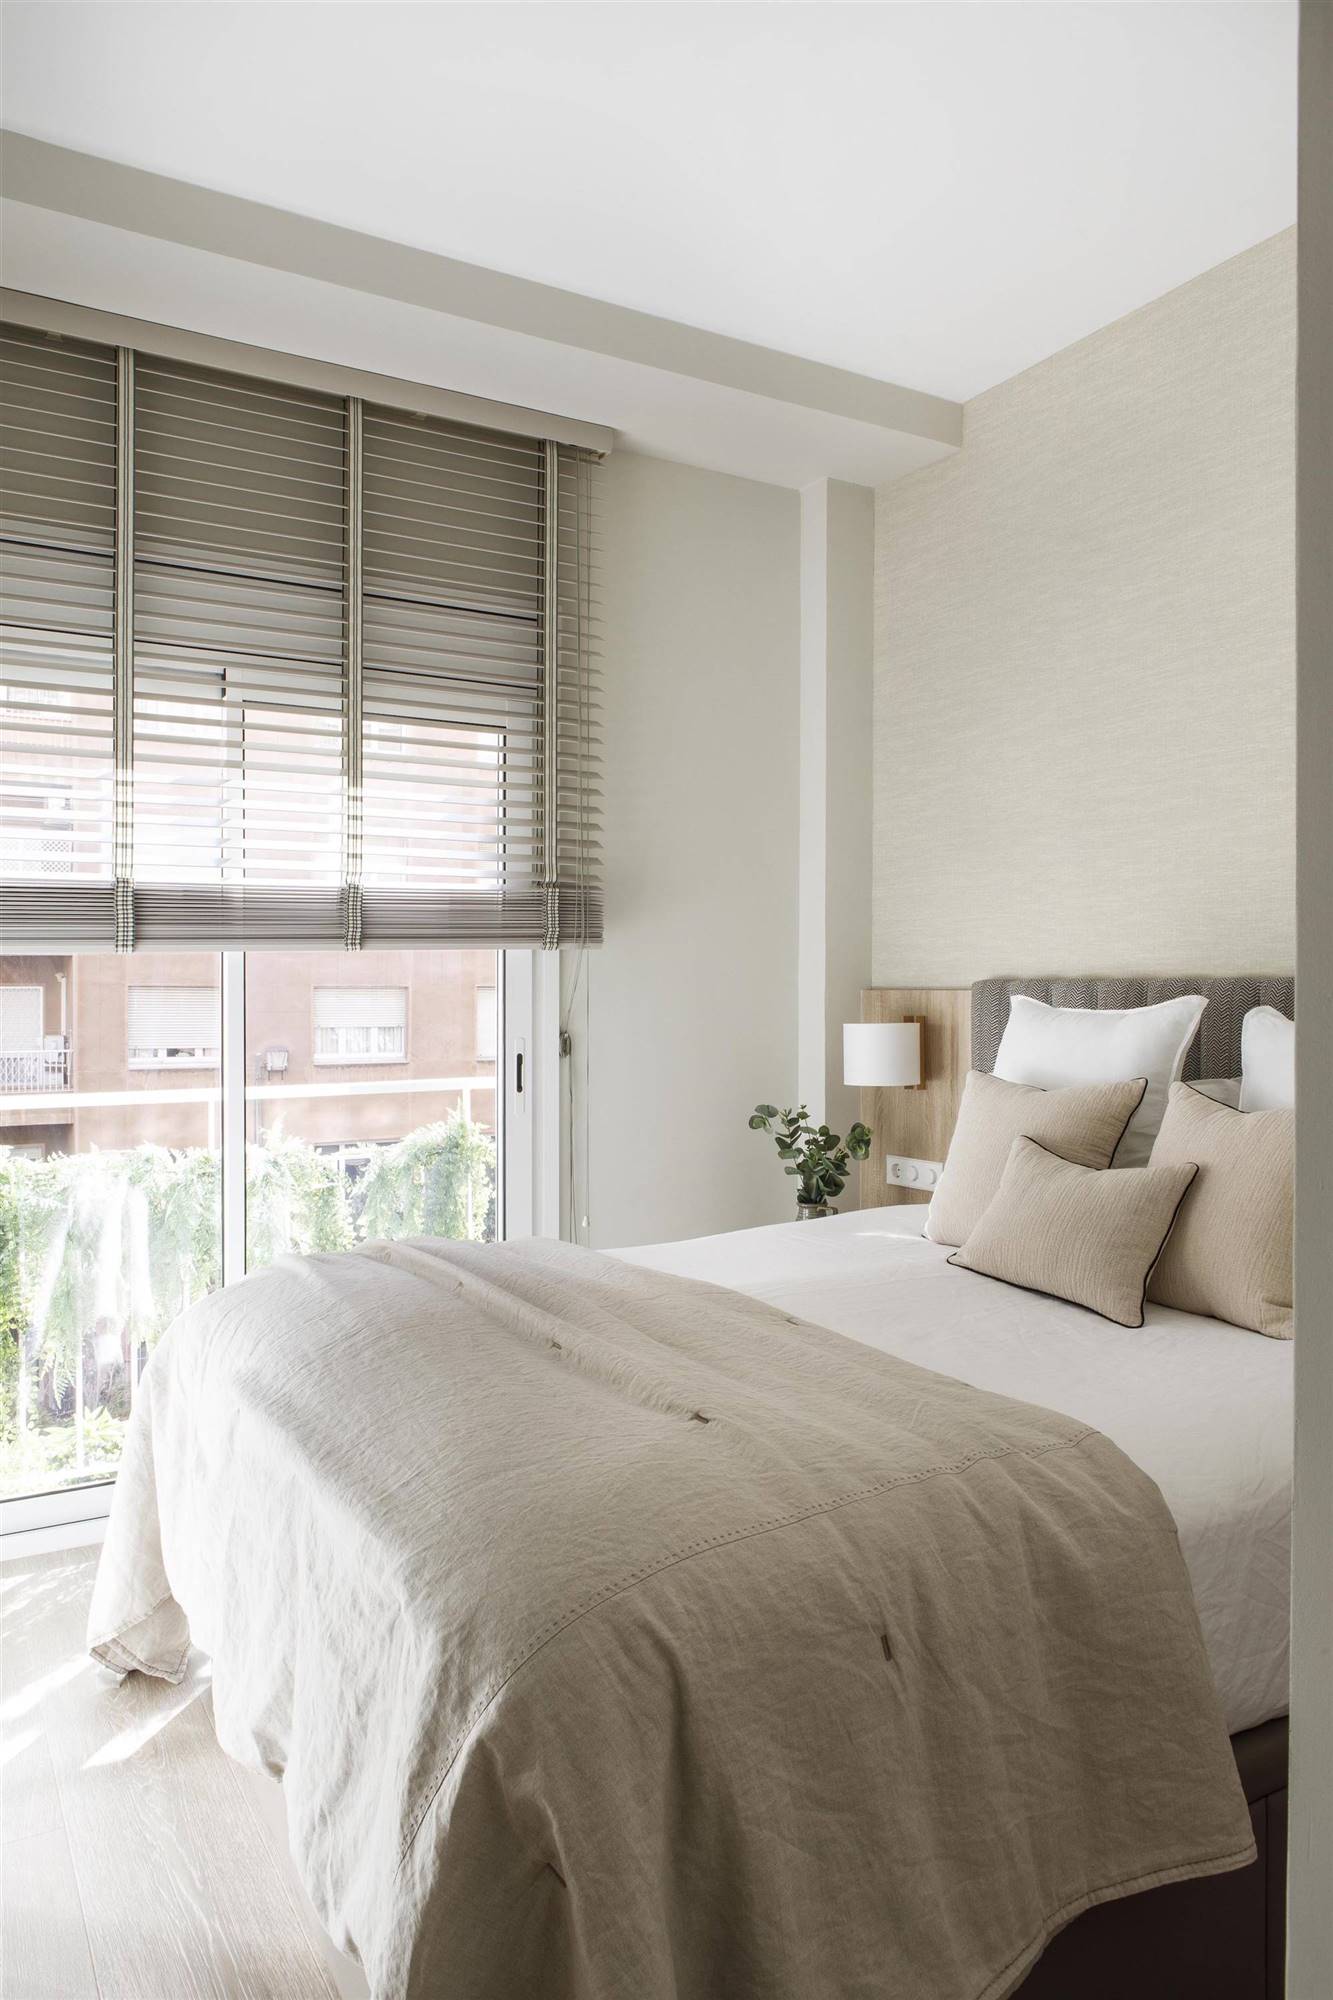 Dormitorio suite con vestidor con papel pintado y cabecero tapizado proyecto de Pia Capdevila.